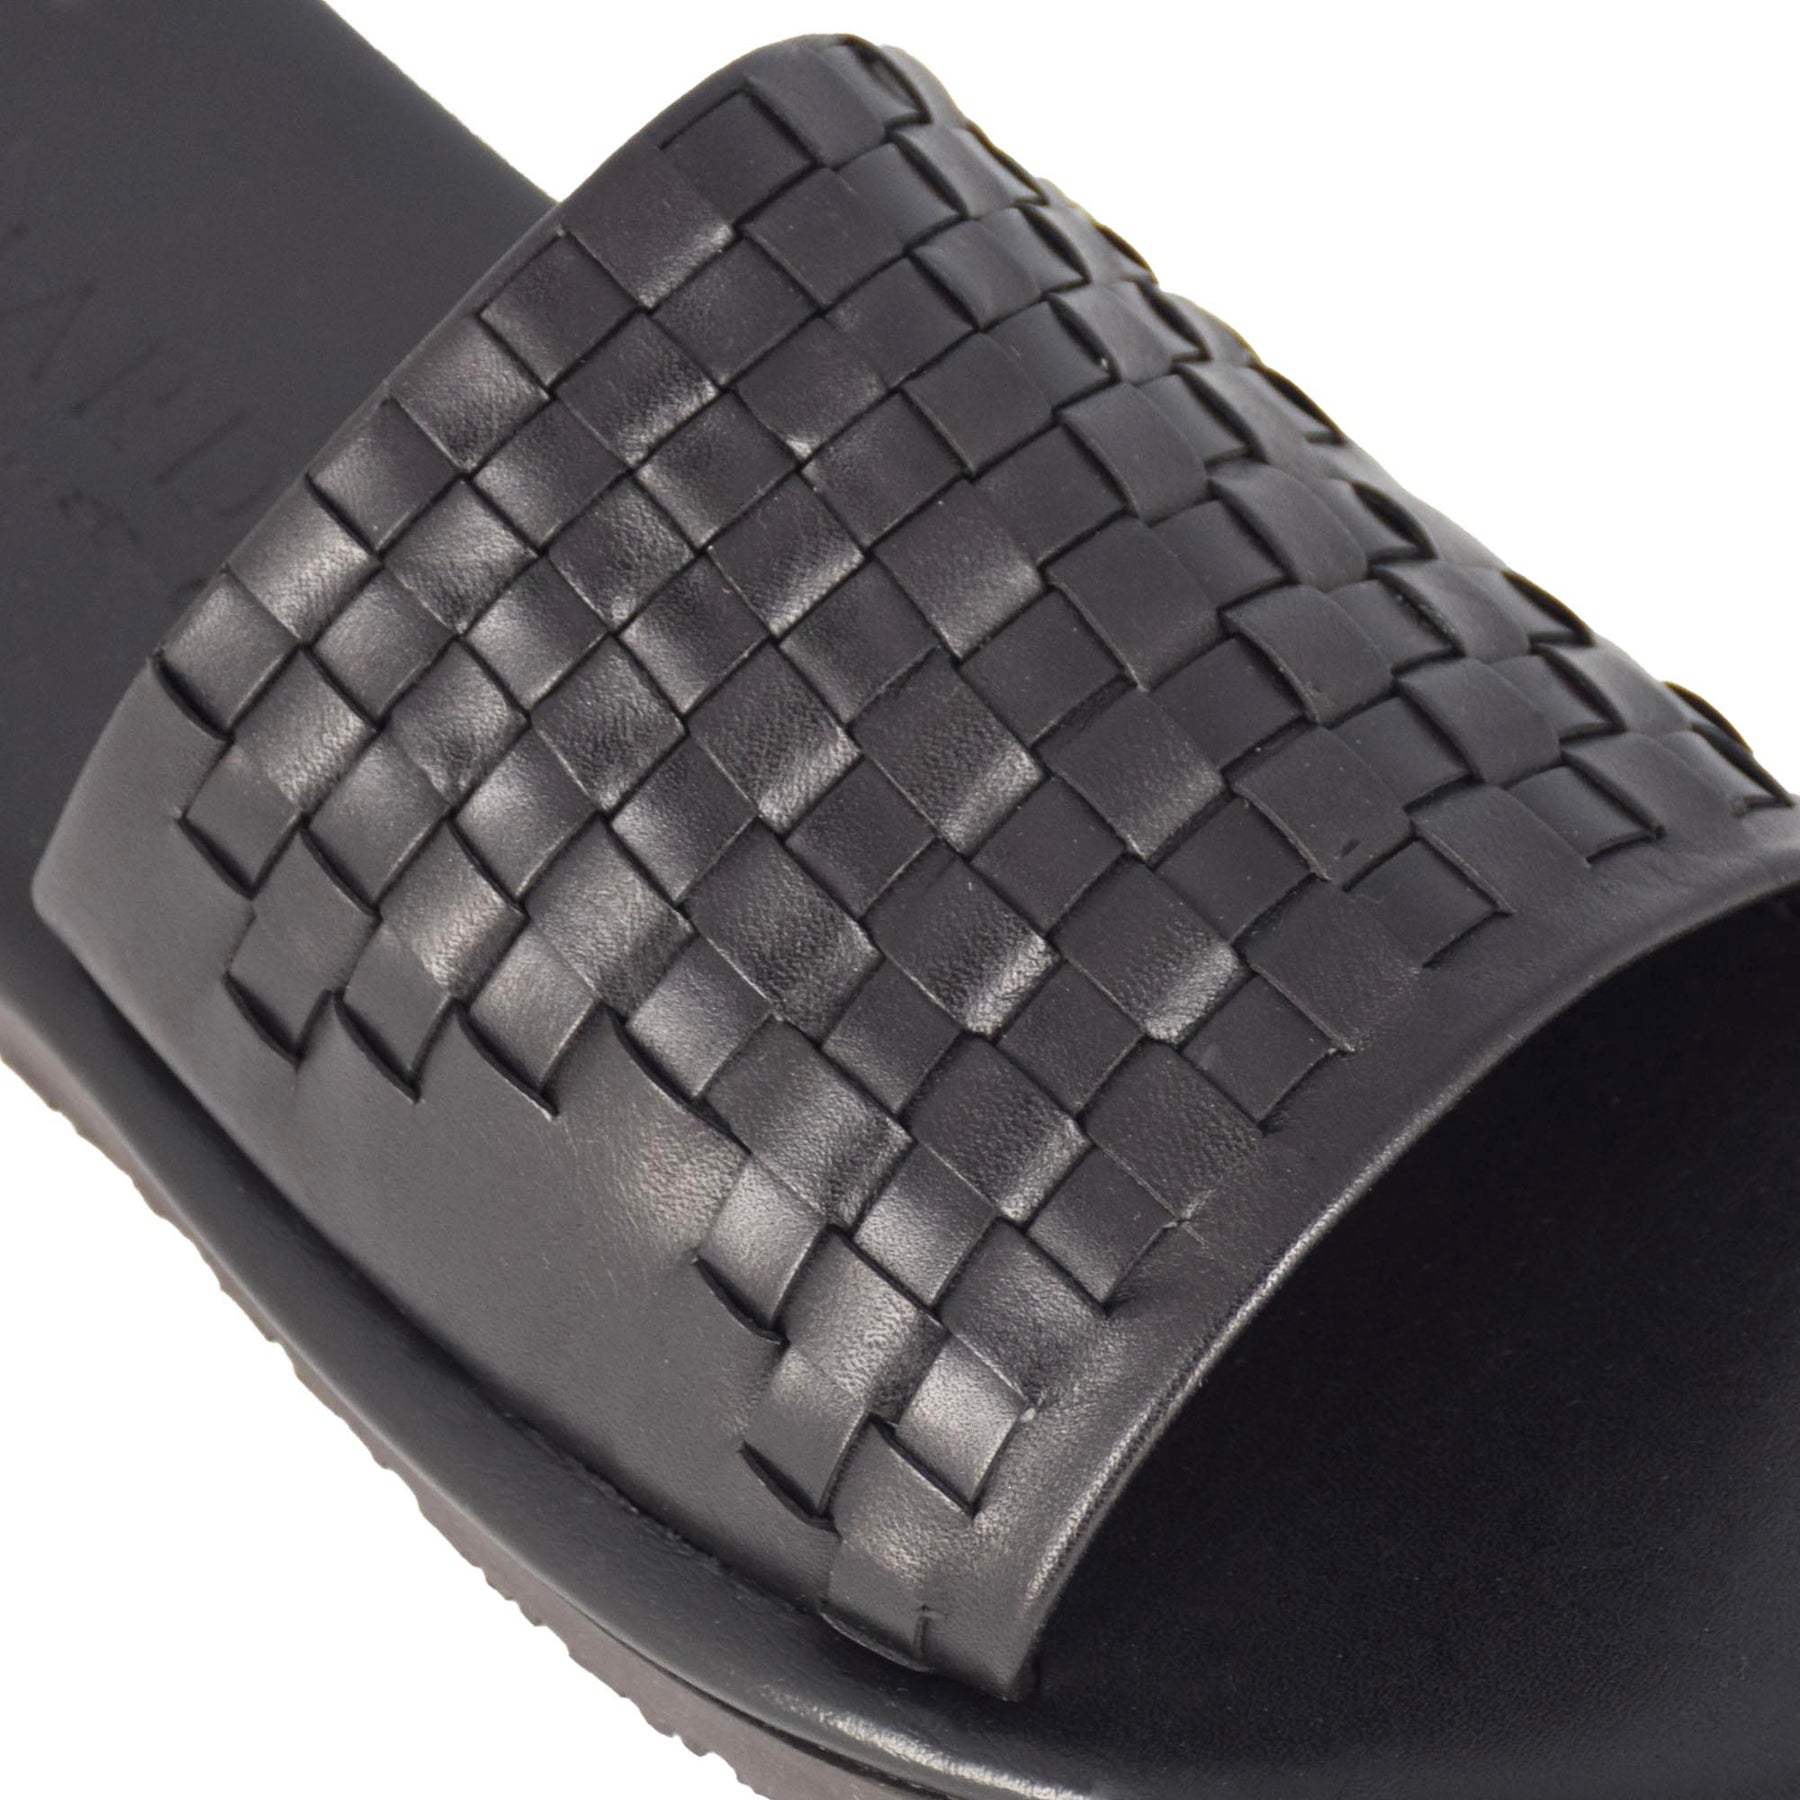 Herren-Slider-Sandale mit schwarzem geflochtenem Lederriemen